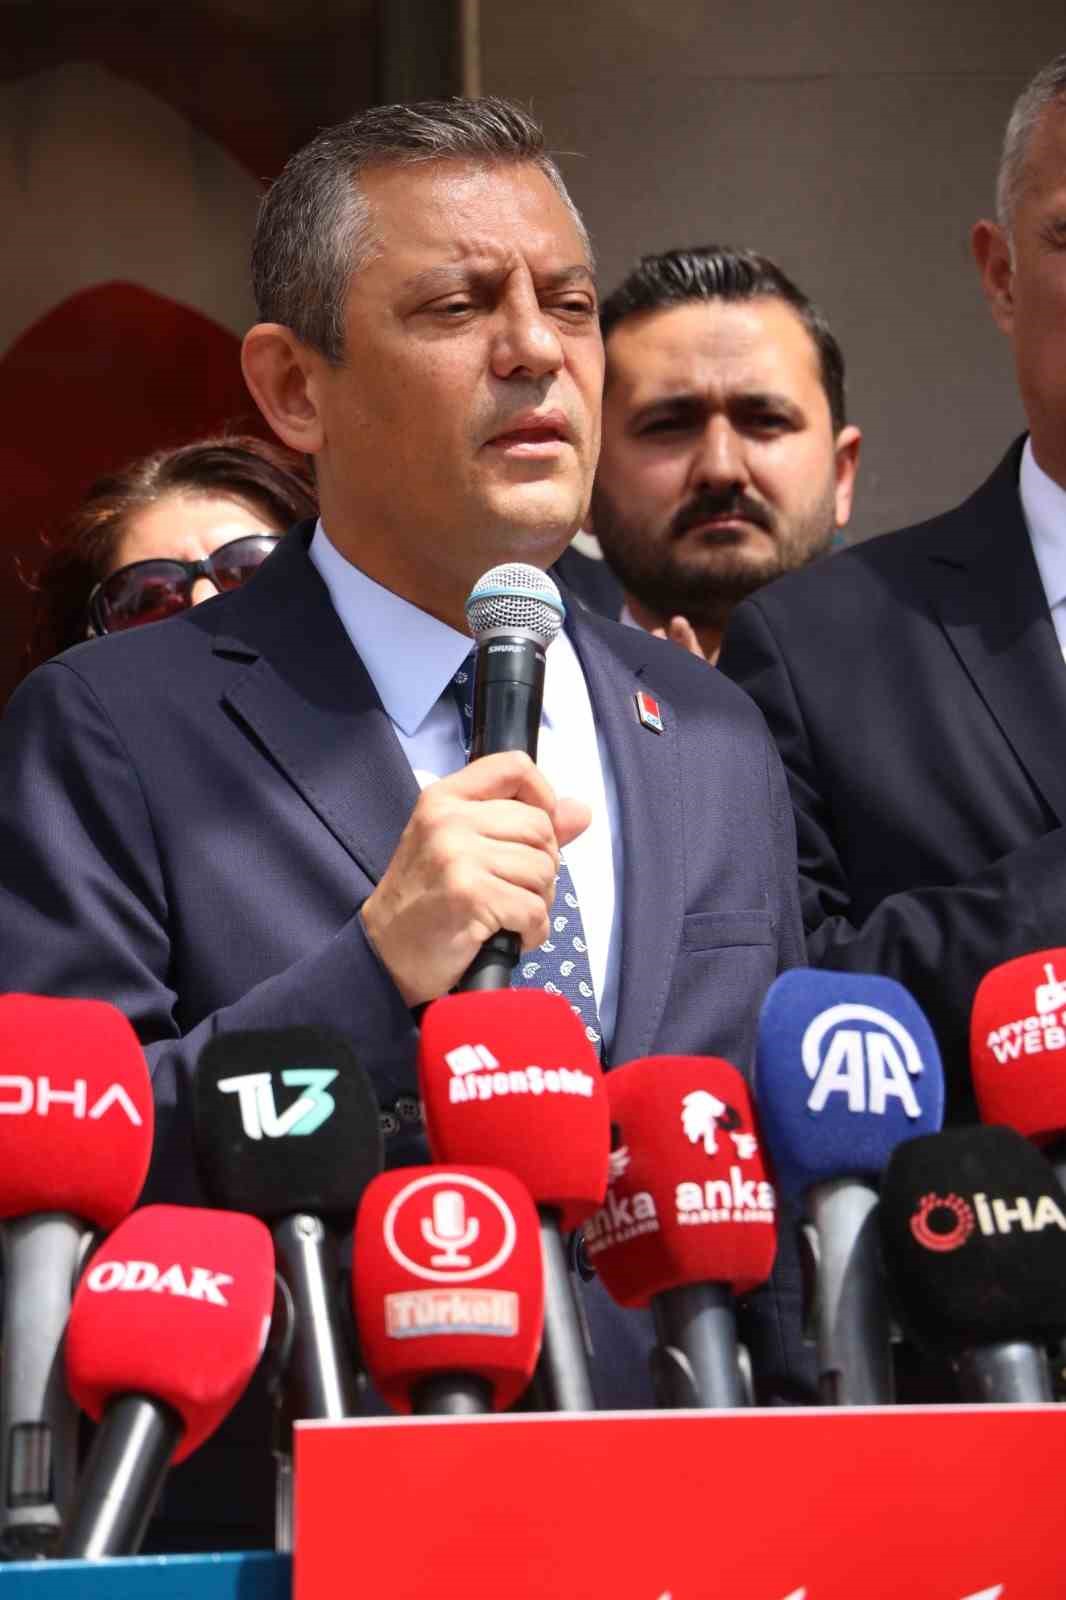 CHP Genel Başkanı Özgür Özel’den belediye başkanları ve partililere uyarı: